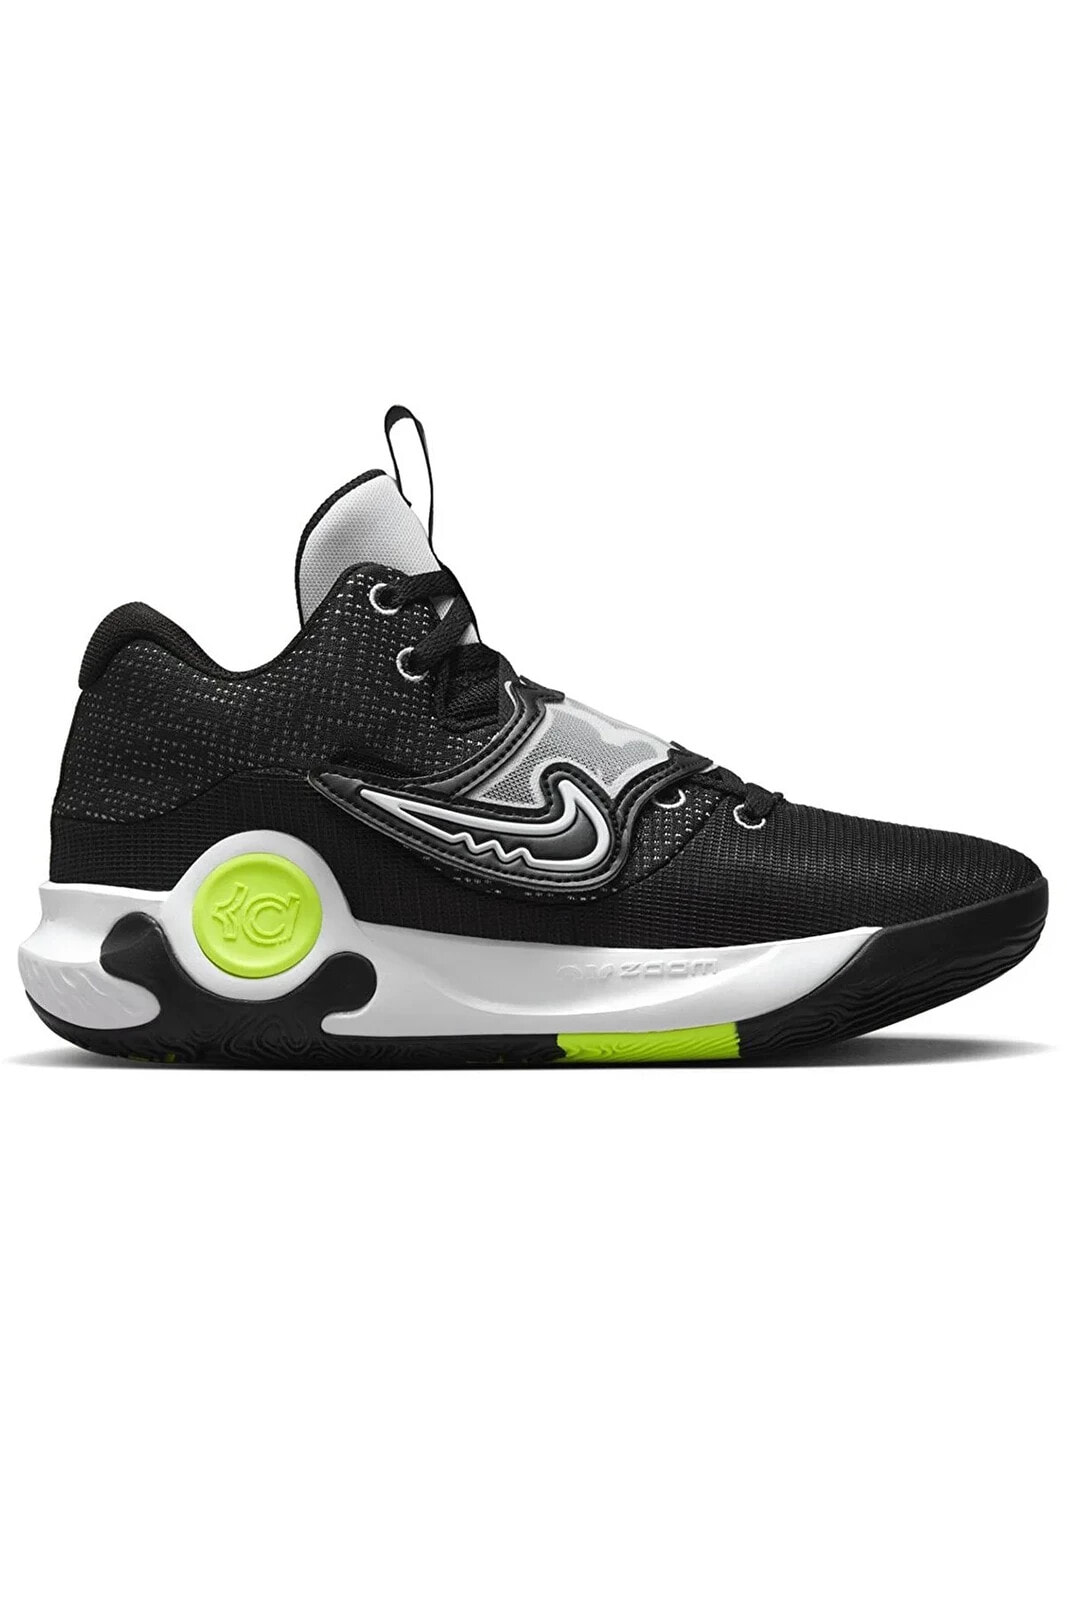 Kd Trey 5 X Erkek Siyah Renk Basketbol Ayakkabısı